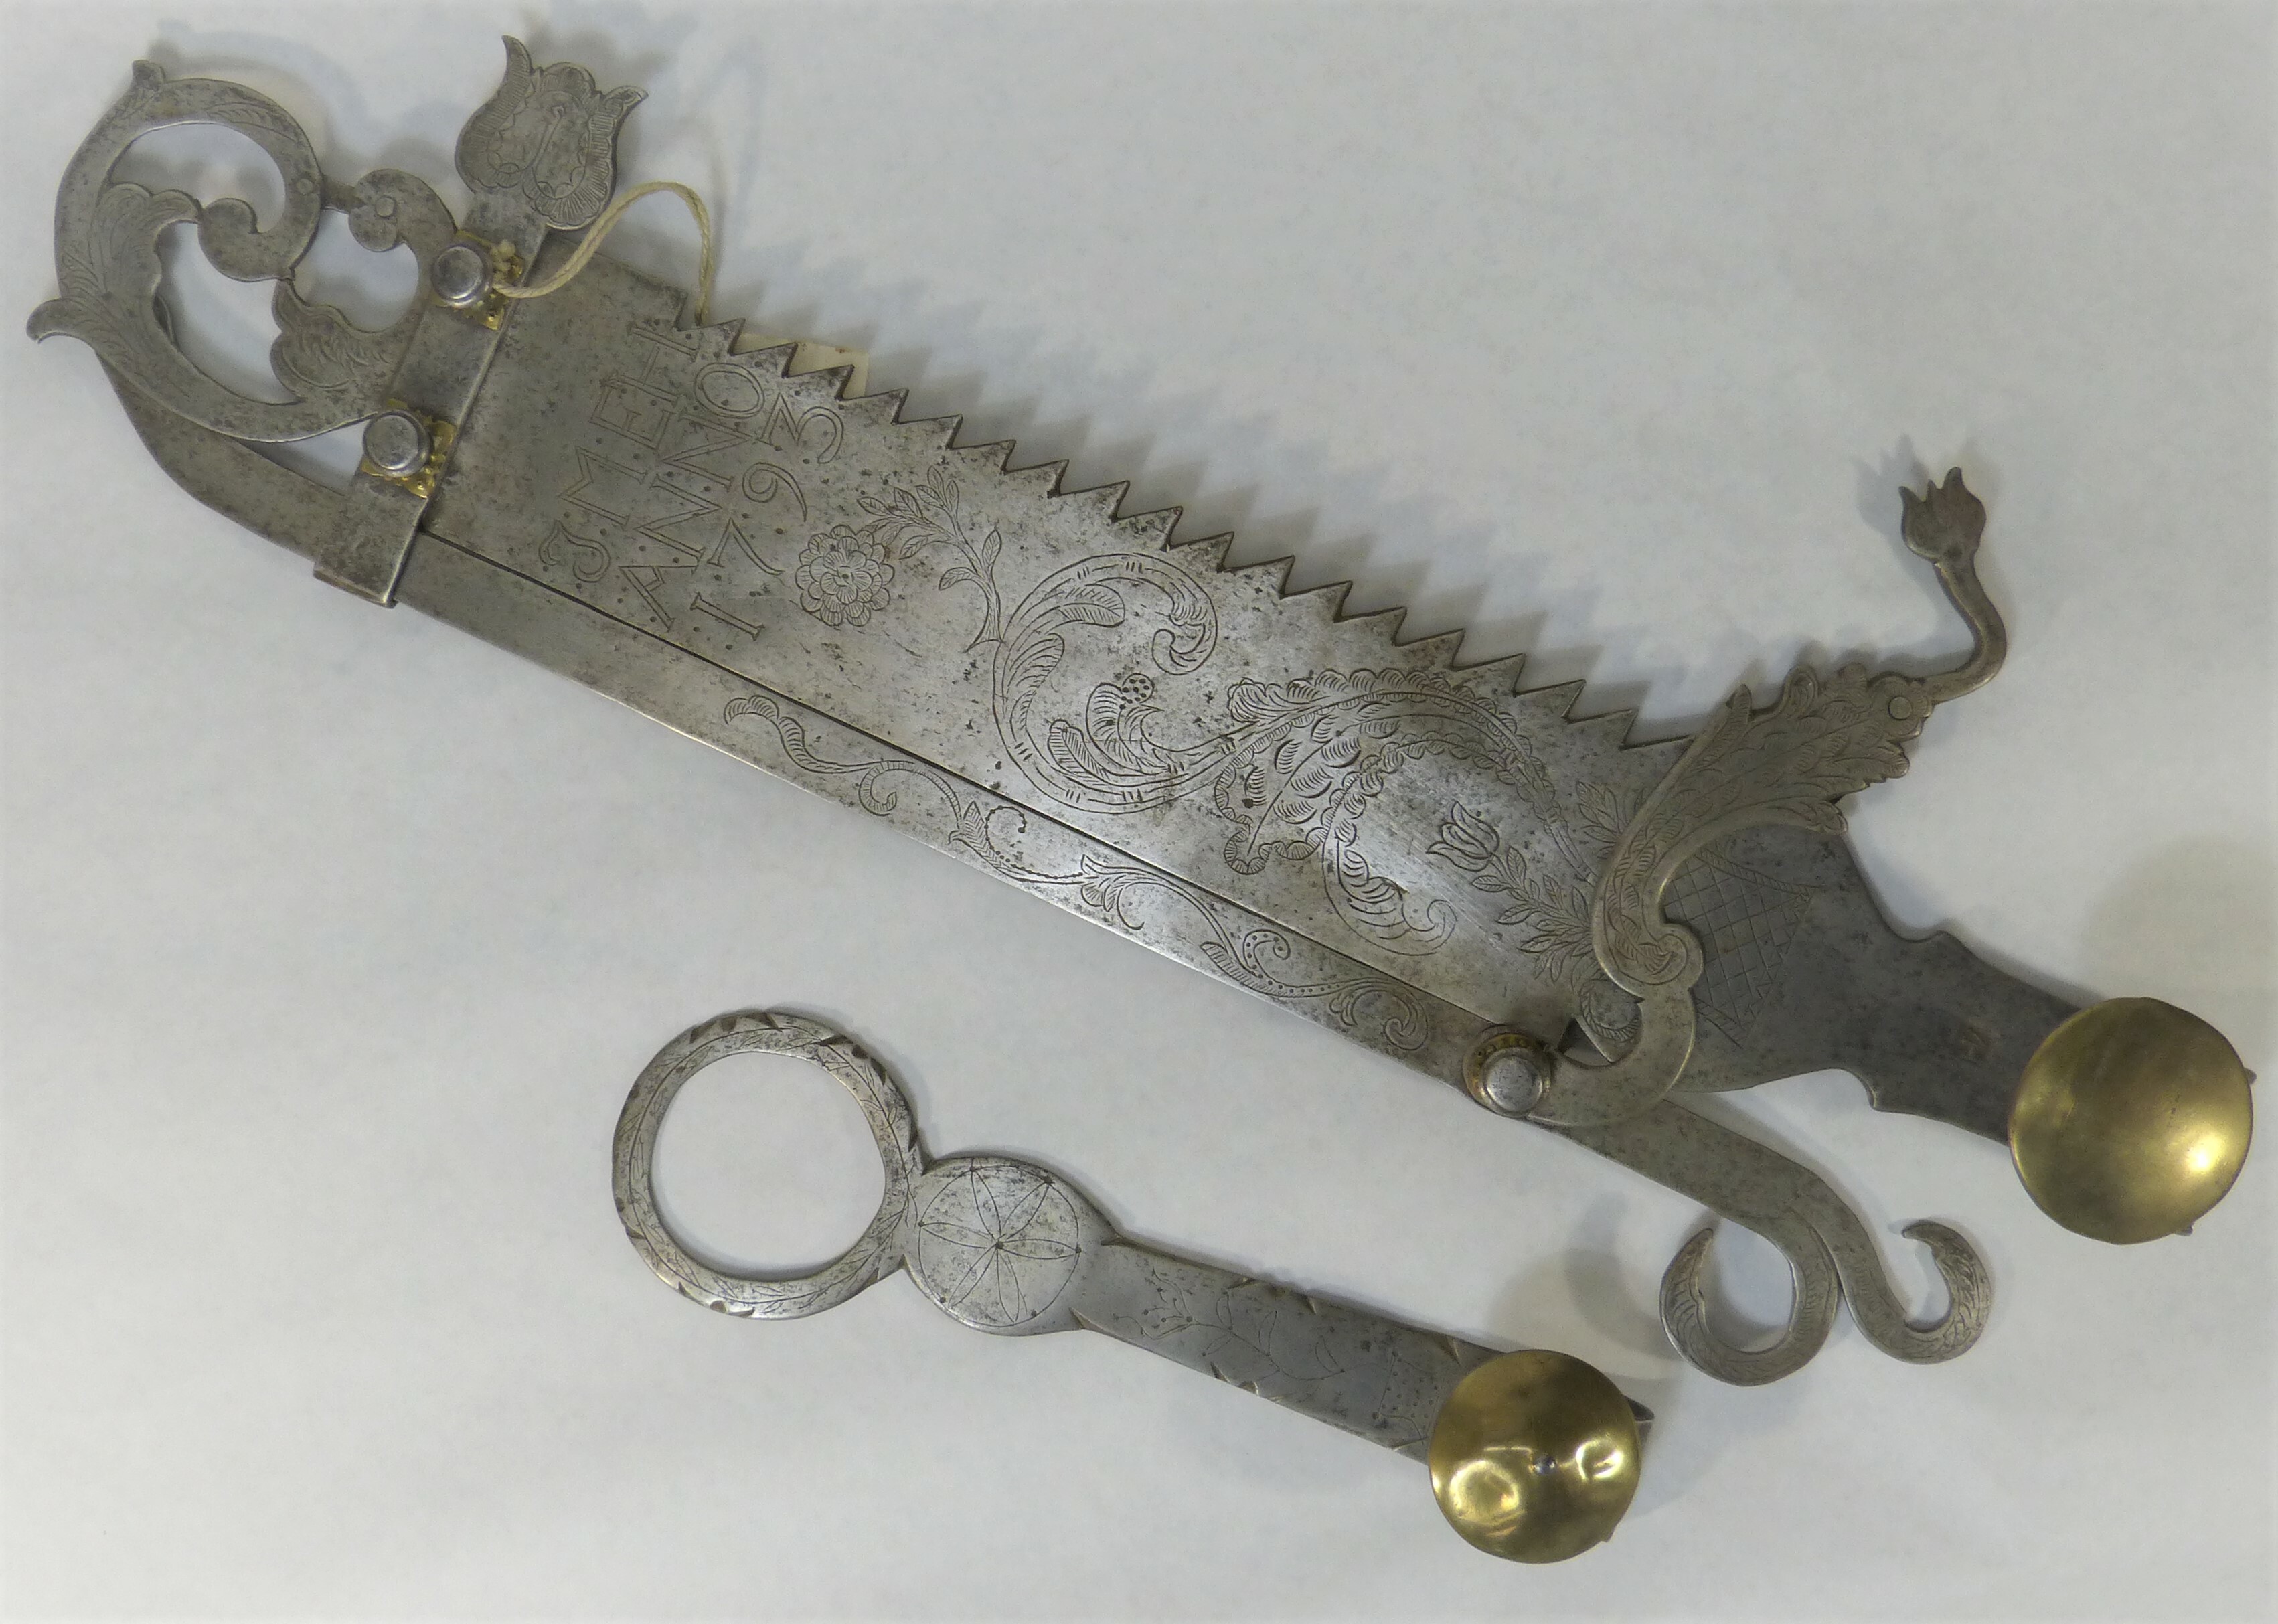 Sagehale oder Sägehal aus Eisen (Städt. Hellweg-Museum Geseke CC BY-NC-SA)